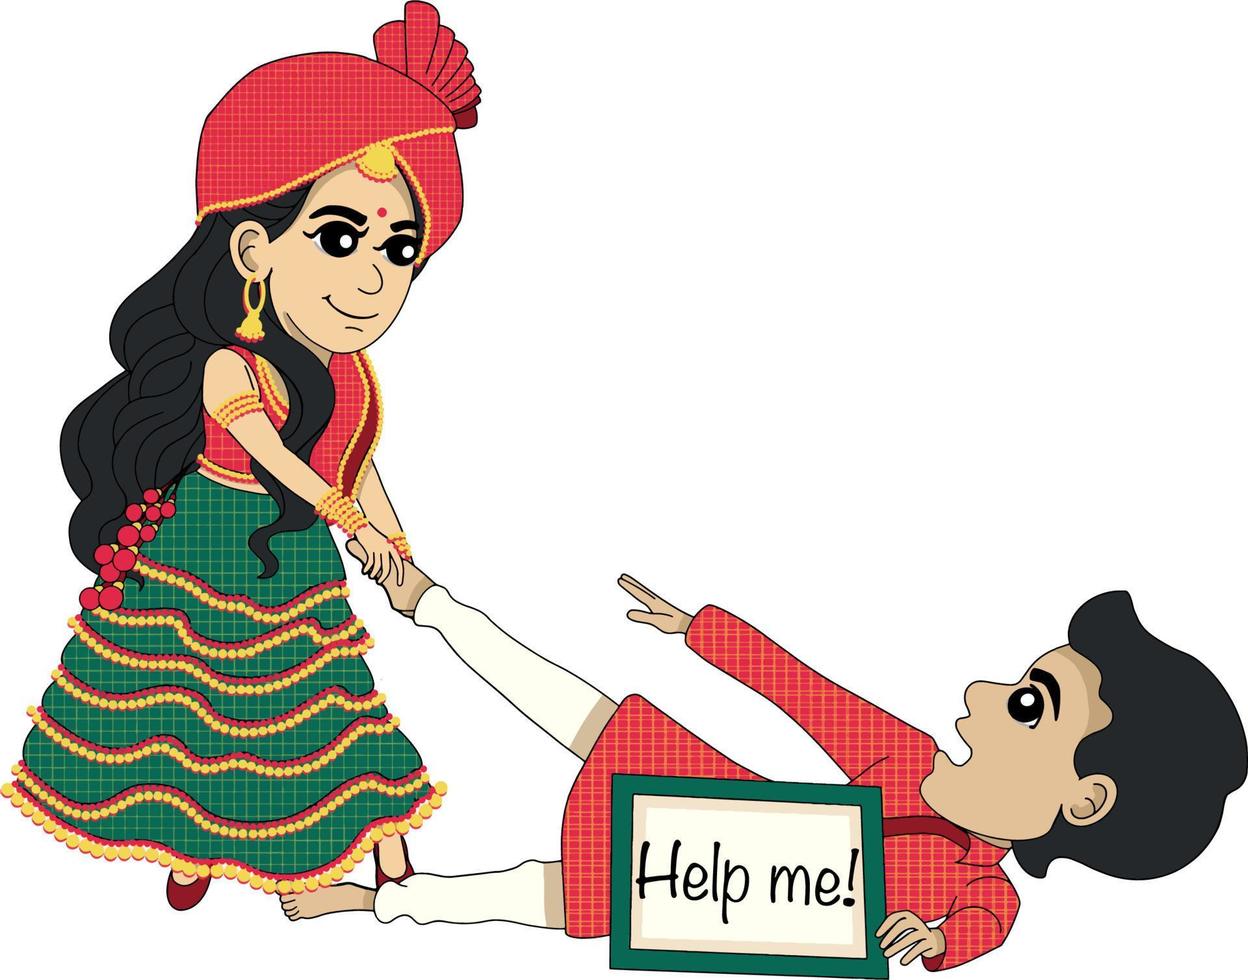 indiano nozze cartone animato personaggio vettore